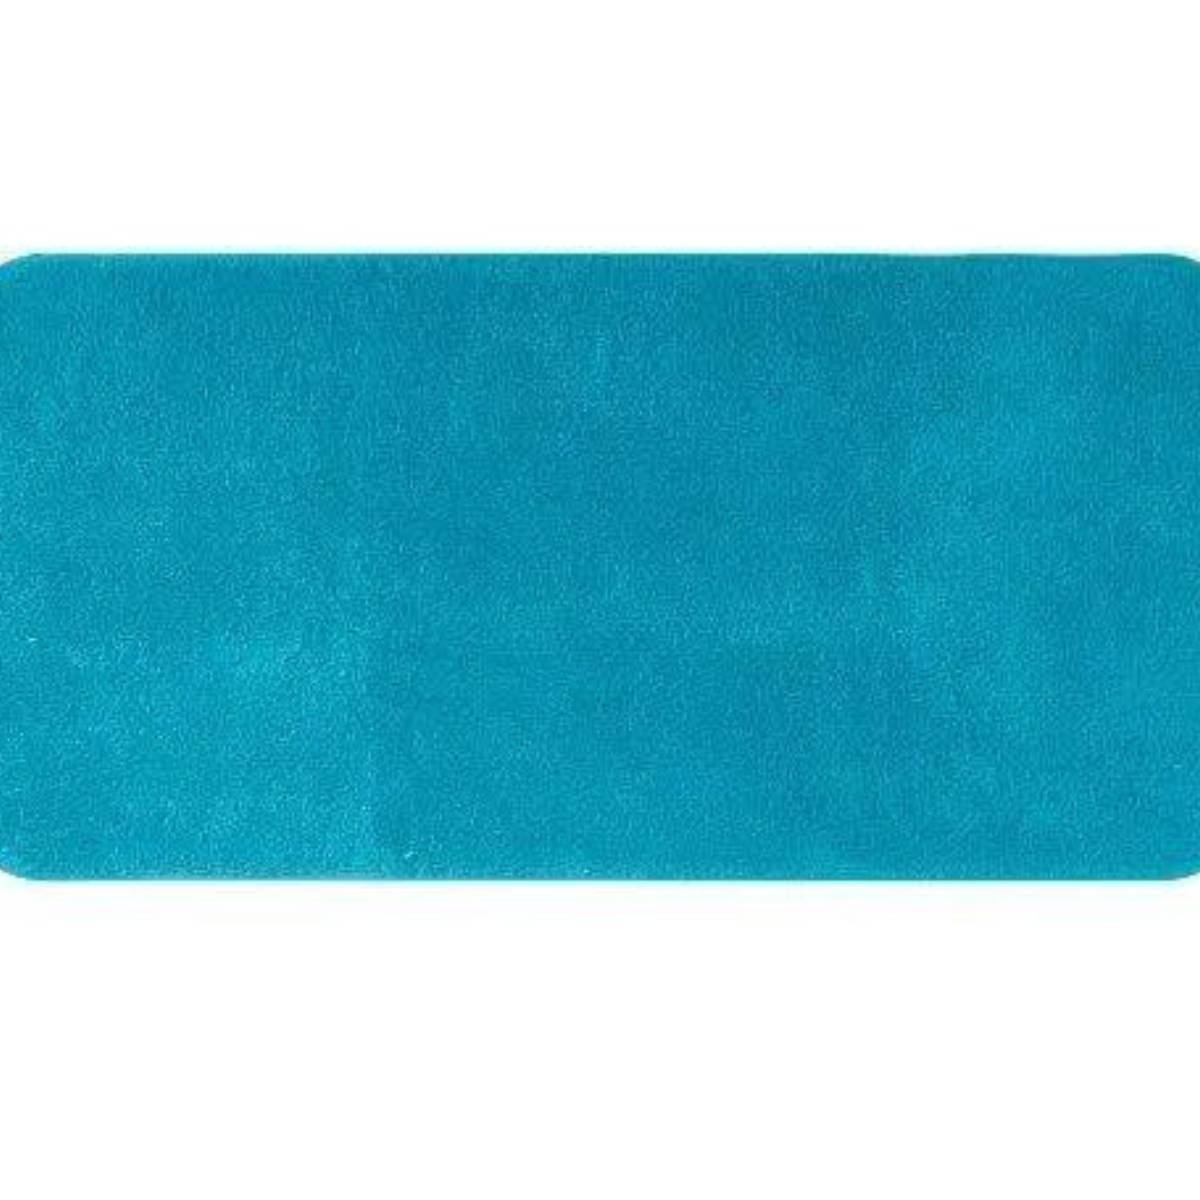 Gelco Design Tapis de bain 50x100cm smooth bleu vivid